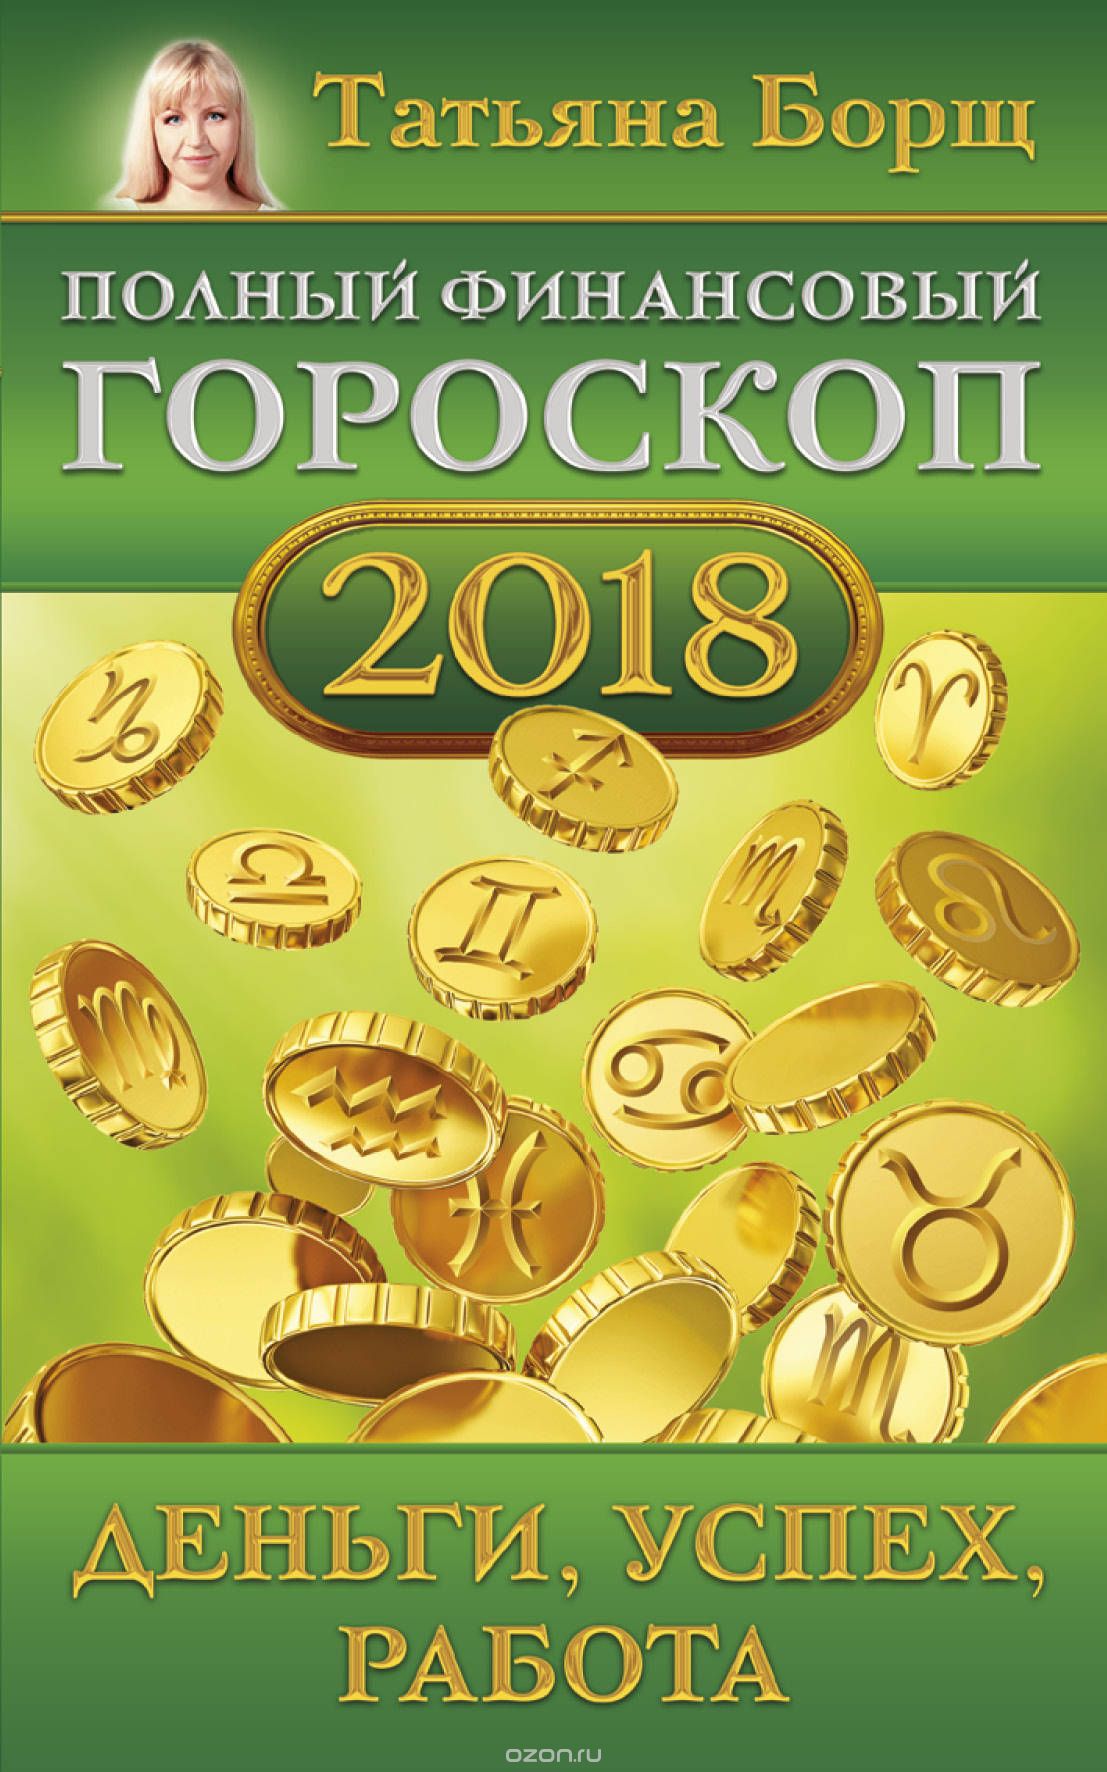 Полный финансовый гороскоп на 2018 год. Деньги, успех, работа, Татьяна Борщ